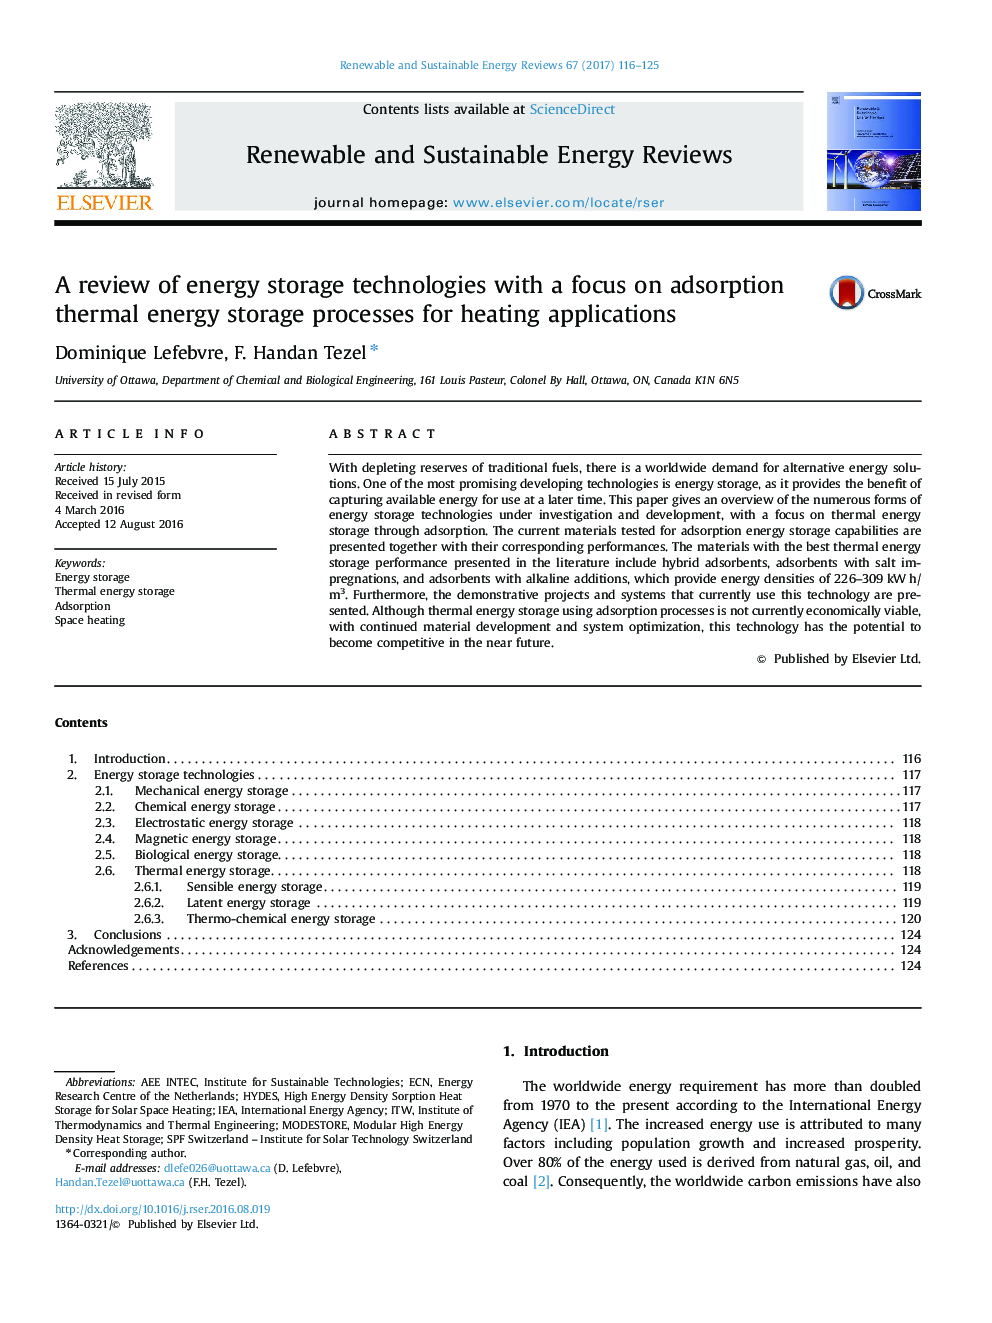 بررسی تکنولوژی ذخیره سازی انرژی با تمرکز بر جذب فرایند ذخیره انرژی حرارتی برای کاربردهای گرما 